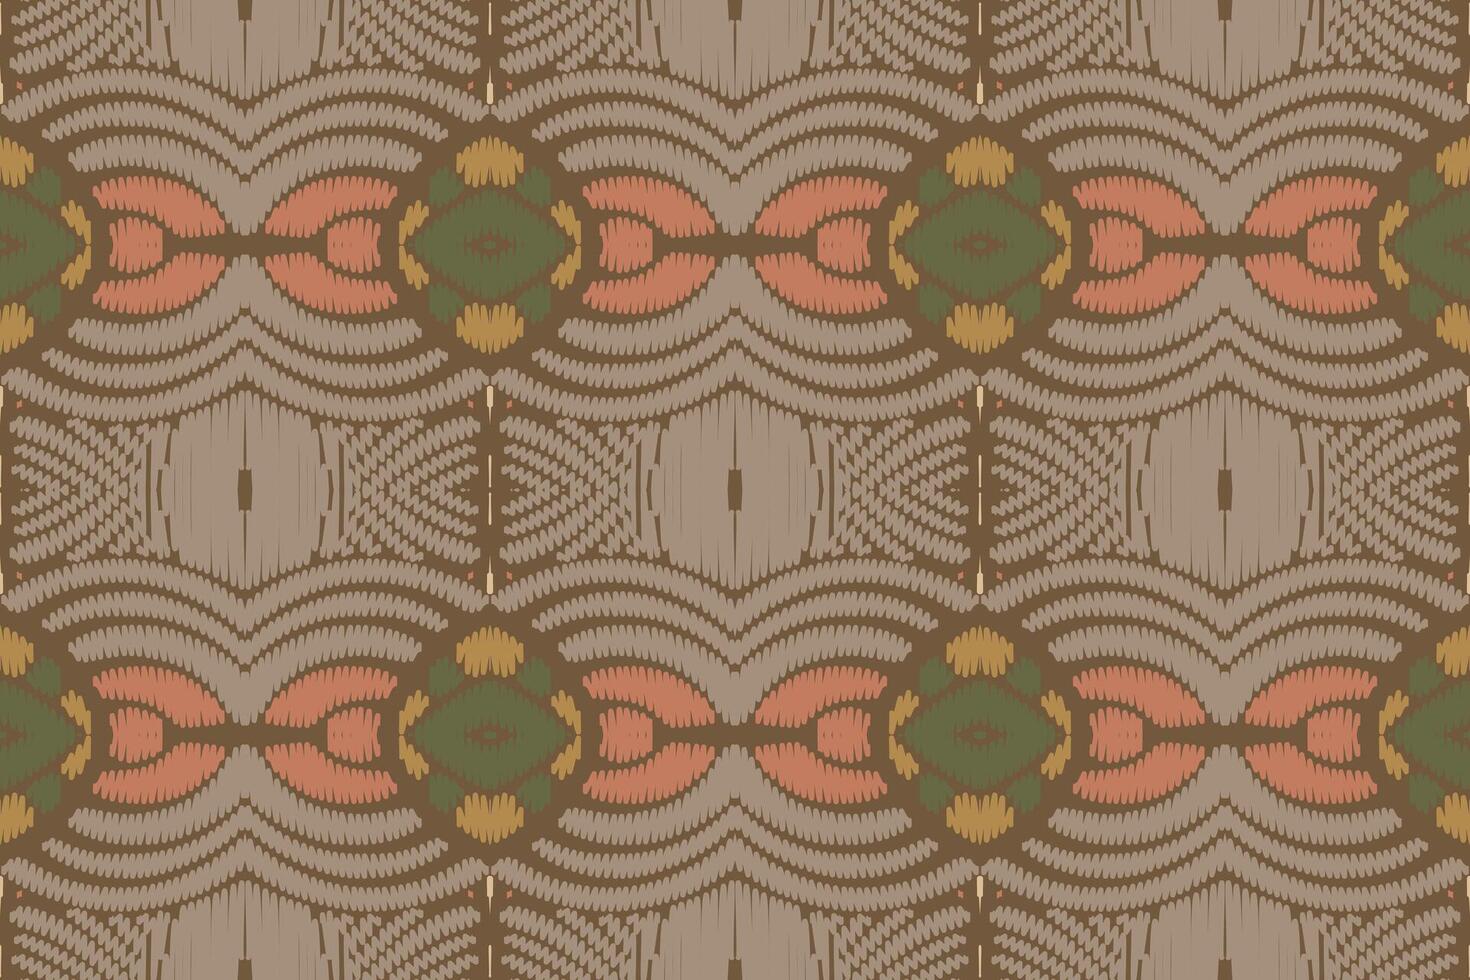 ikat entwirft nahtloses muster des stammeskreuzes. ethnische geometrische batik ikkat digitaler vektor textildesign für drucke stoff saree mughal pinsel symbol schwaden textur kurti kurtis kurtas